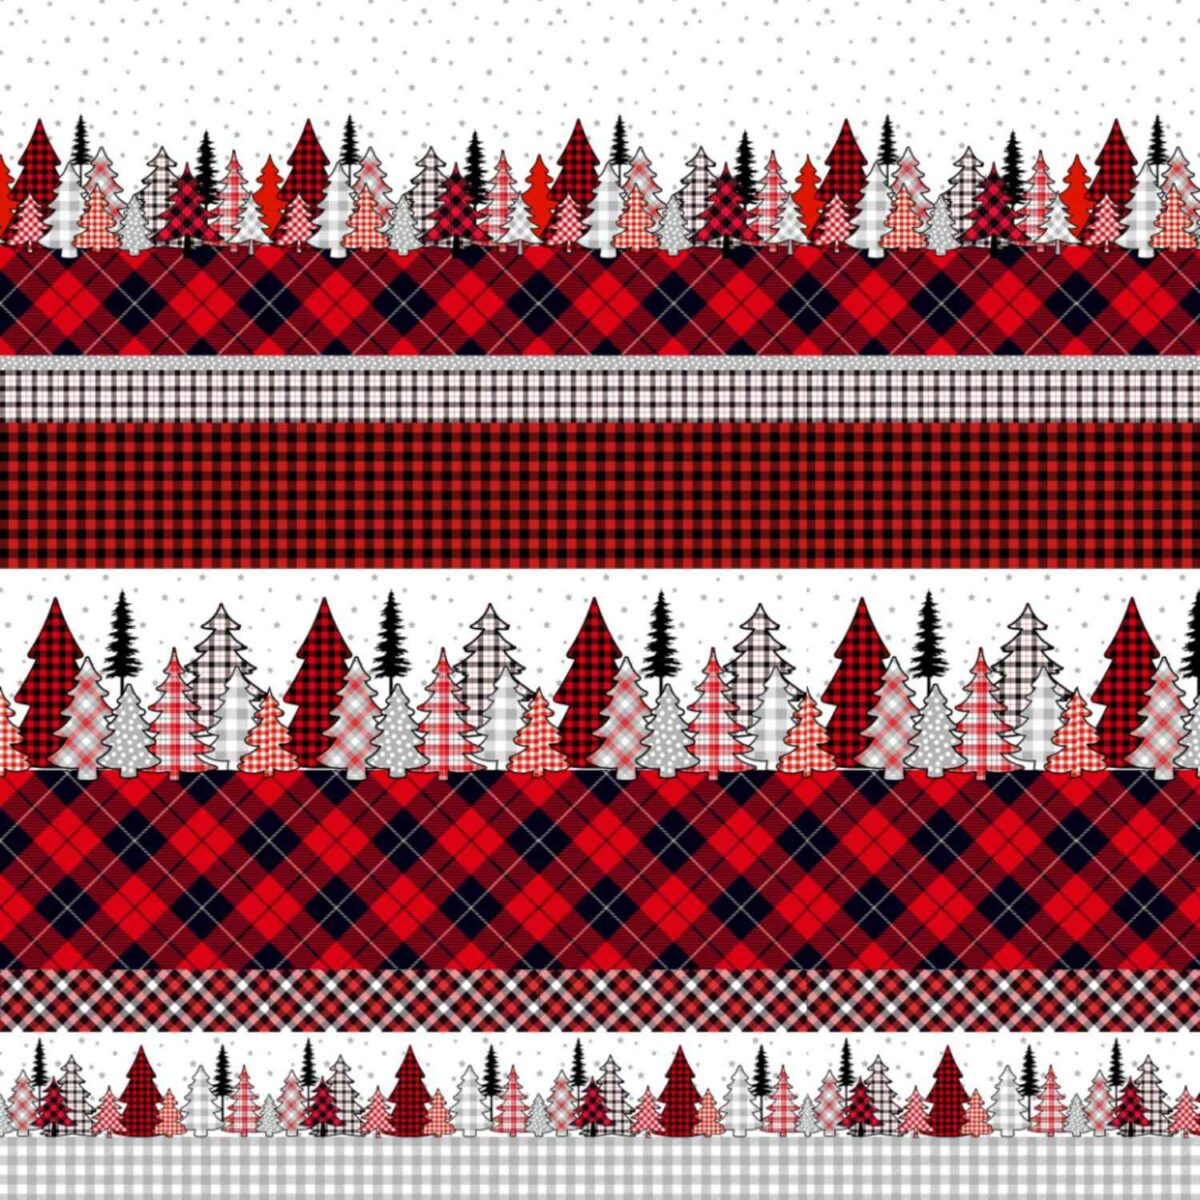 renna-copritutto-telo-arredo-tuttofare-abeti-invernale-natale-neve-christmas-winter-scozzese-rosso-nero-grigio-bianco-pattern